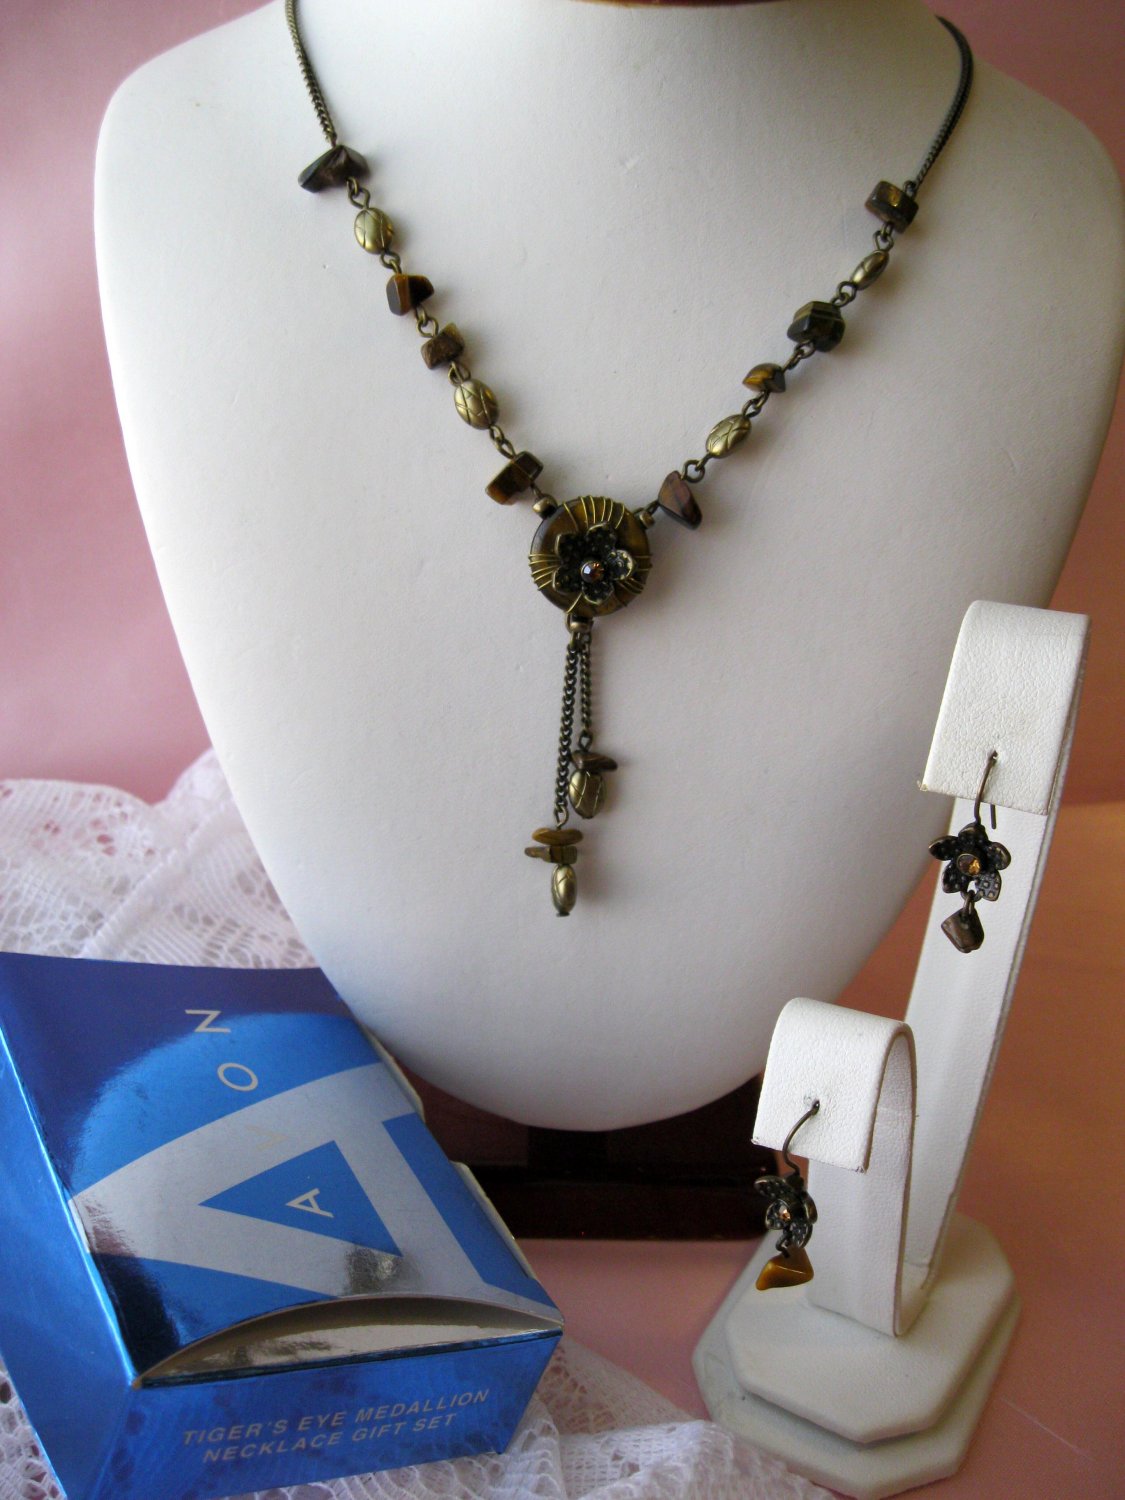 Tiger's Eye Medallion,Avon Necklace,Avon Earrings,earrings,Gift Set